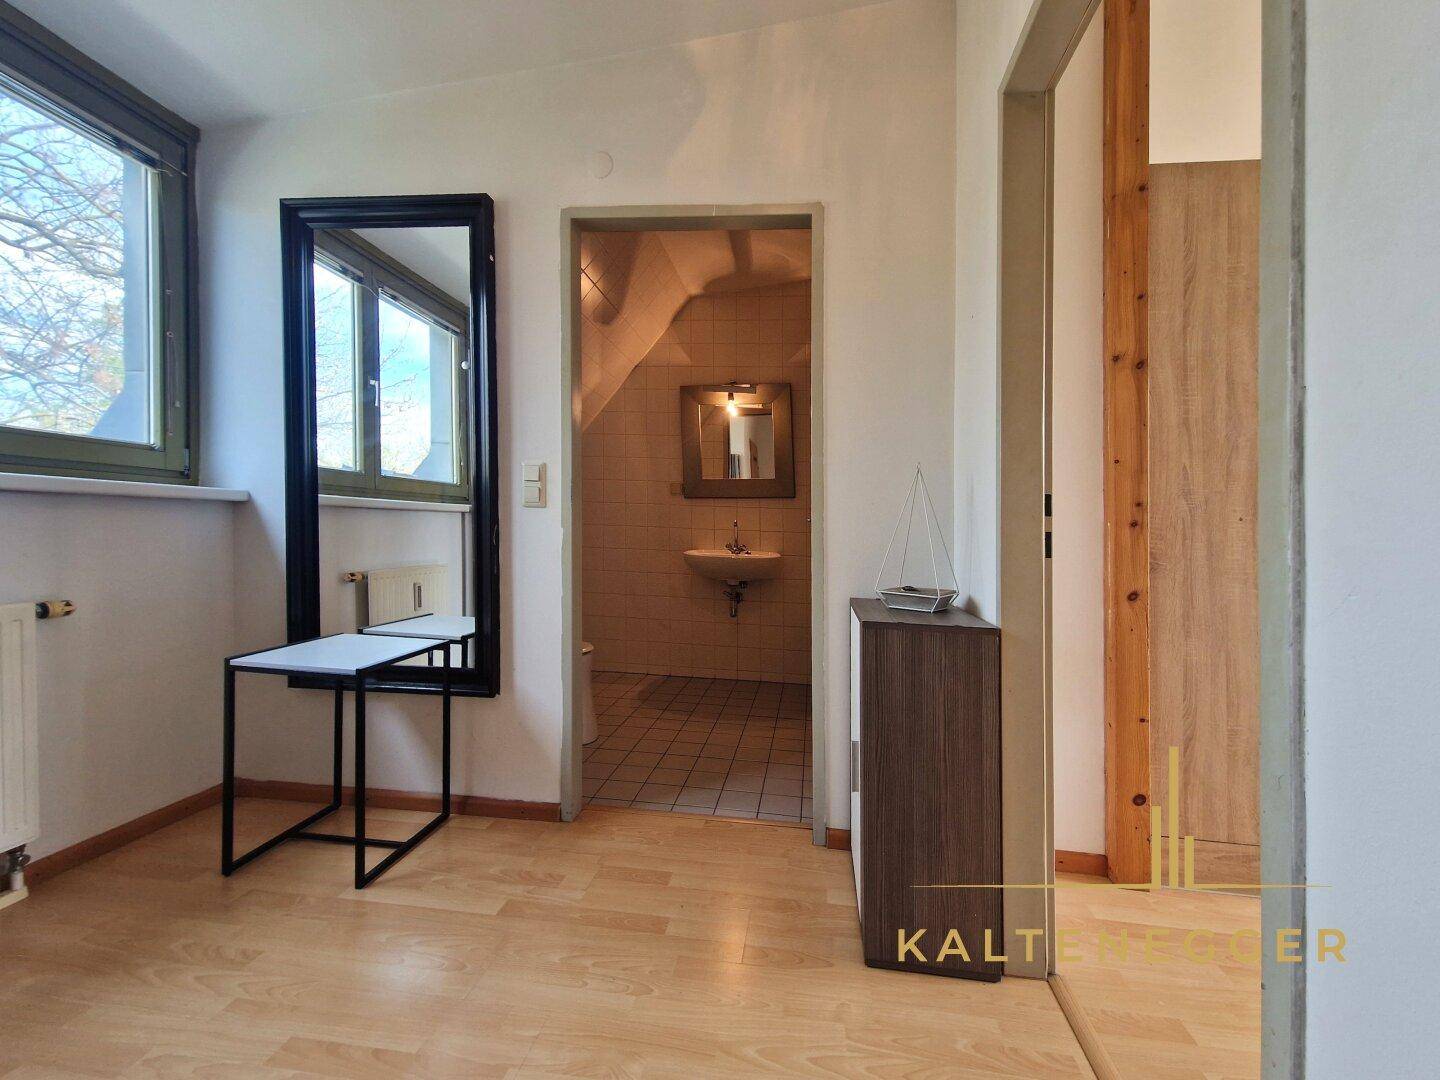 Vorzimmer mit Blick in das Bad, Tür rechts zum Wohnzimmer mit offener Küche